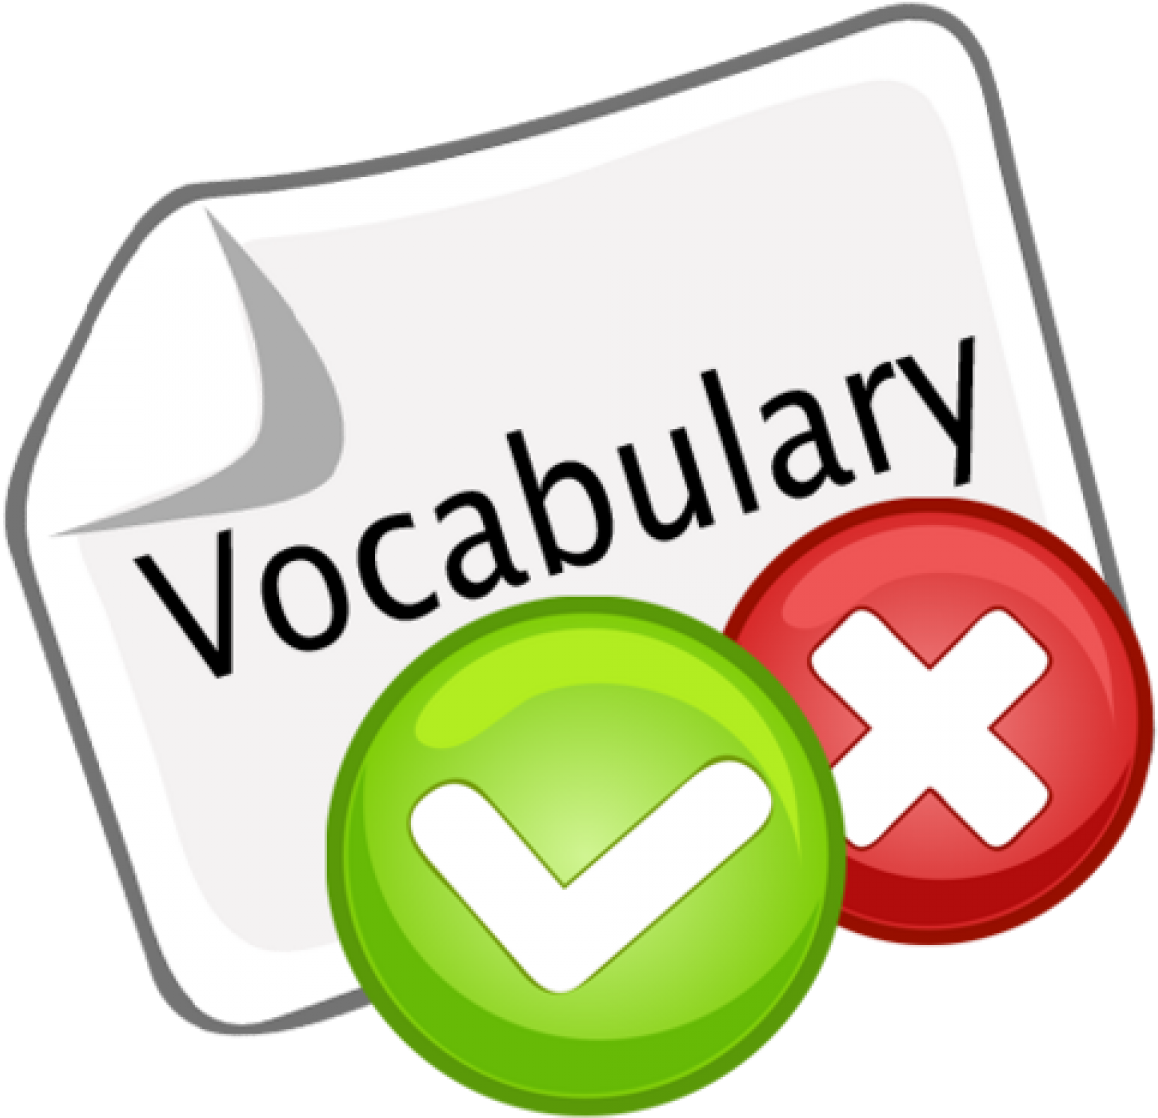 Vocabulary Quiz Clipart Clipartxtras - Vocabulary Quiz (1200x1200)